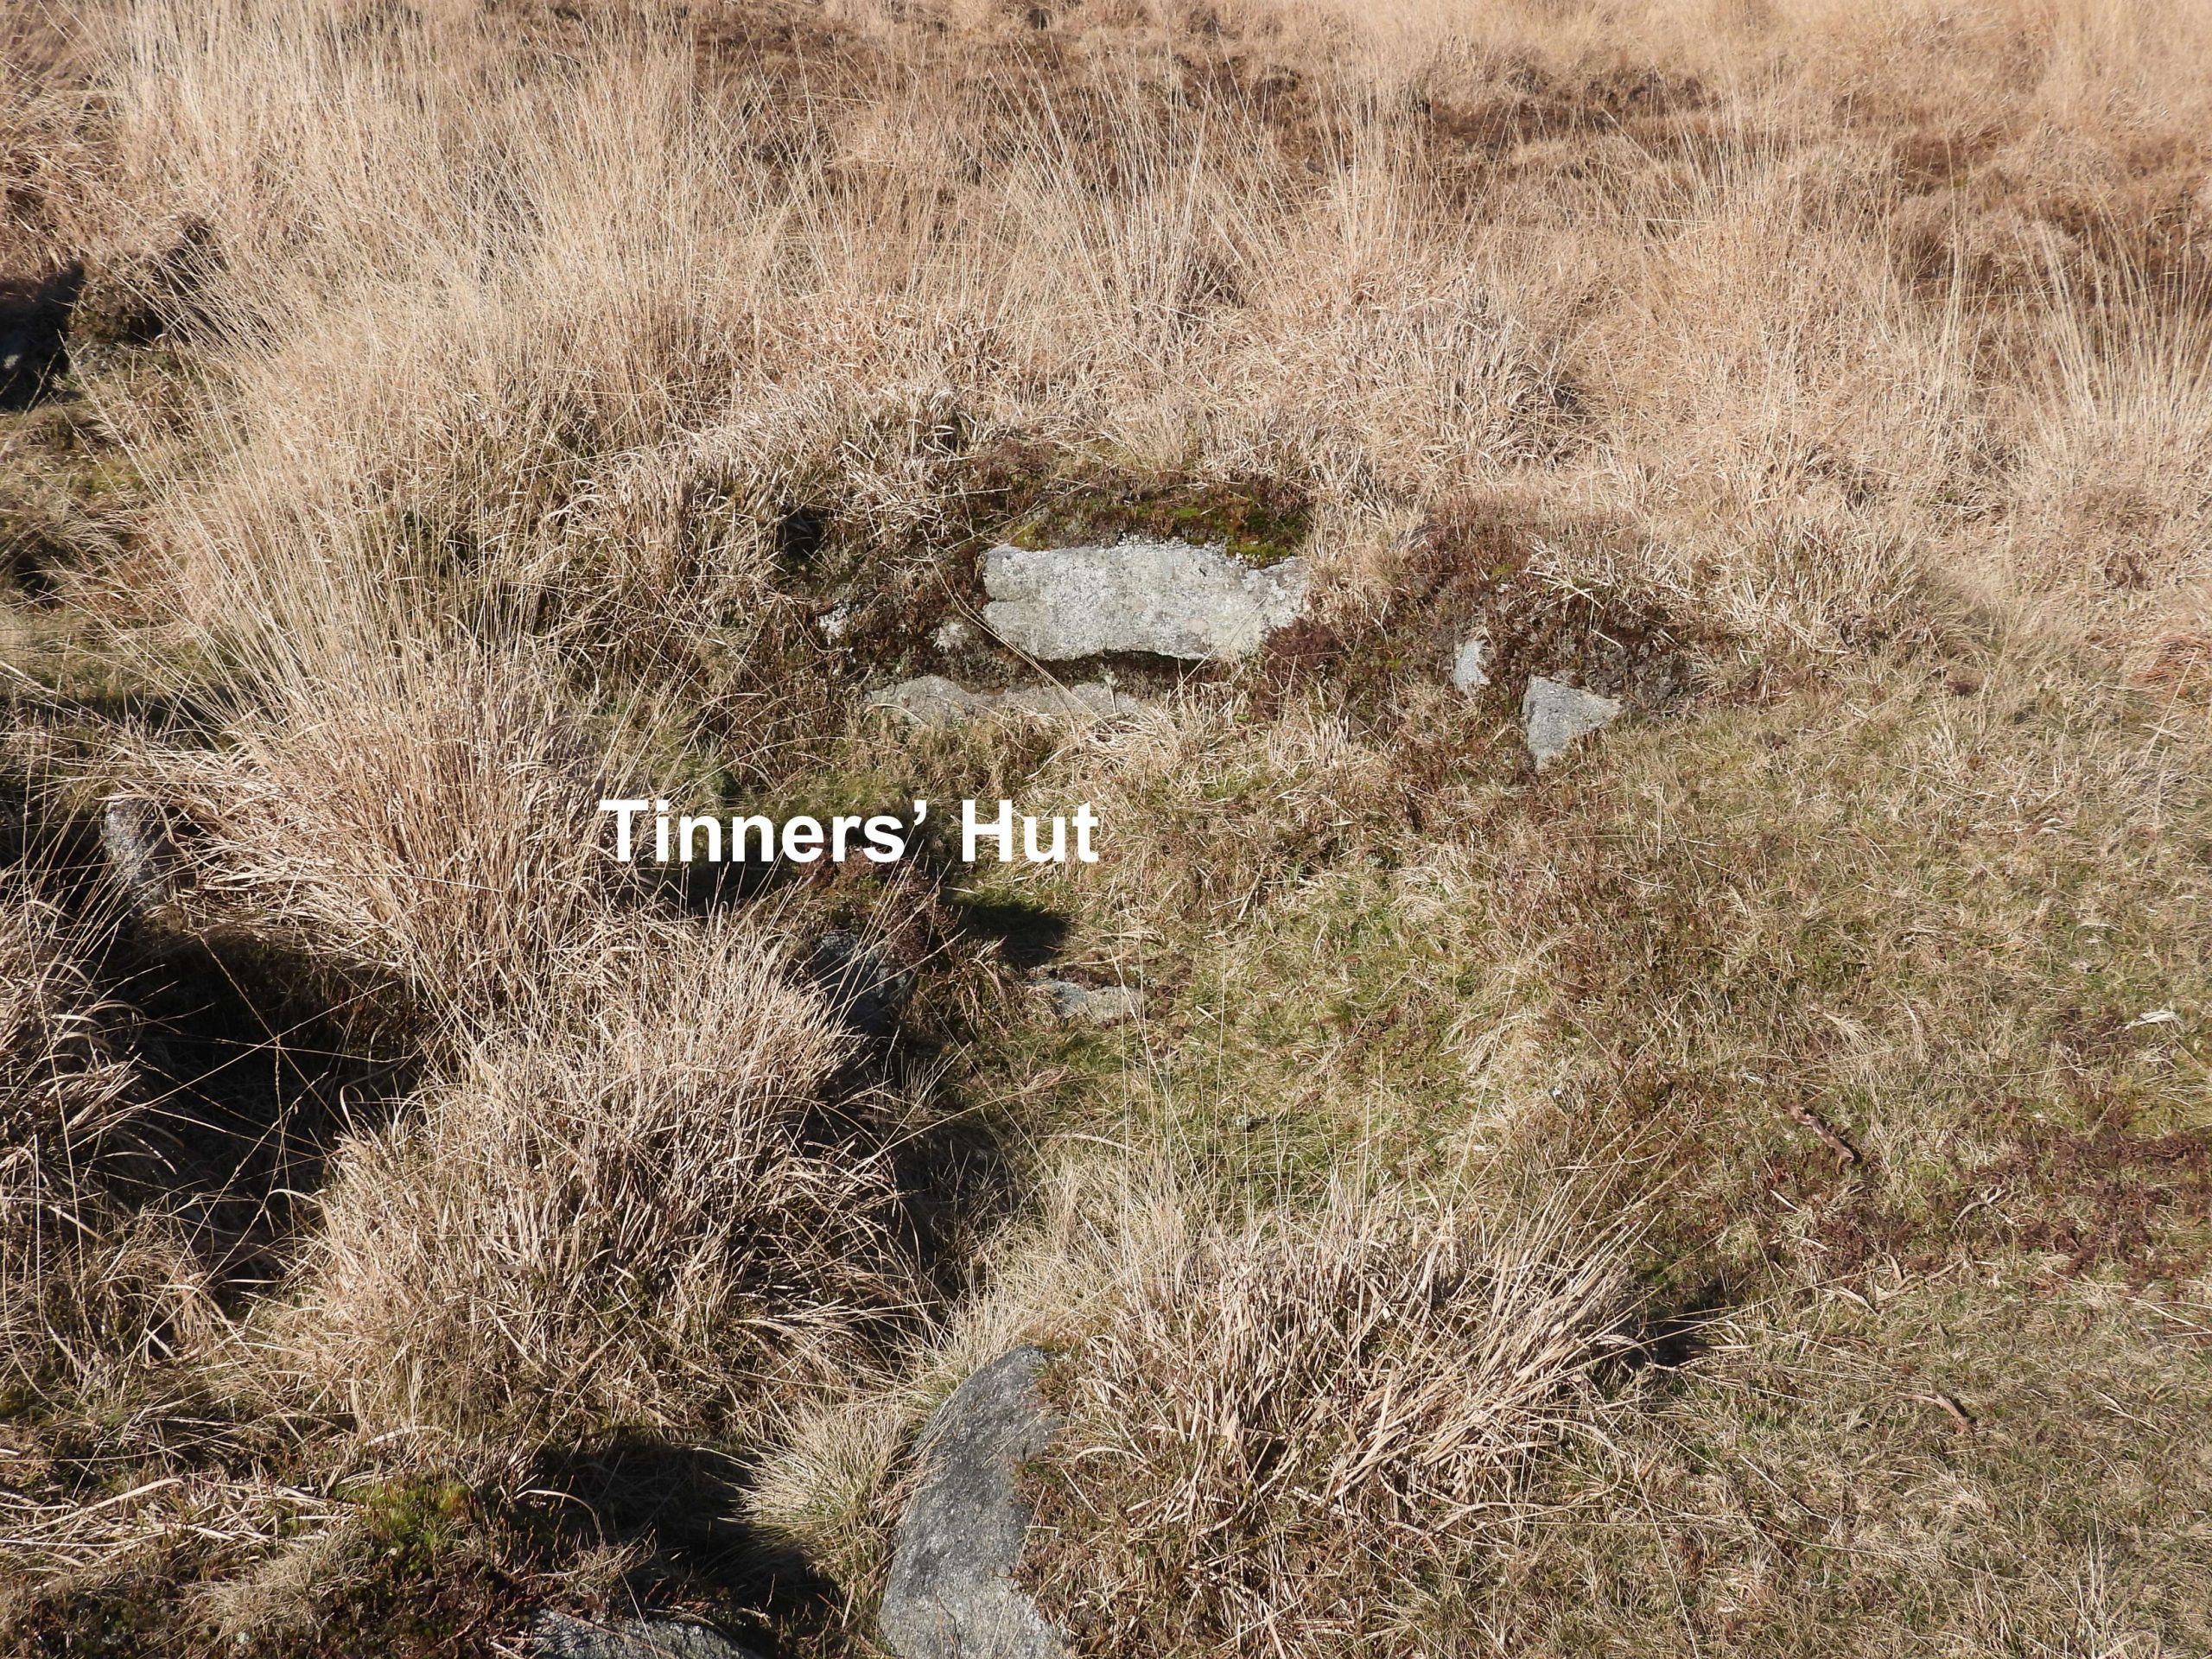 2c. Tinners Hut